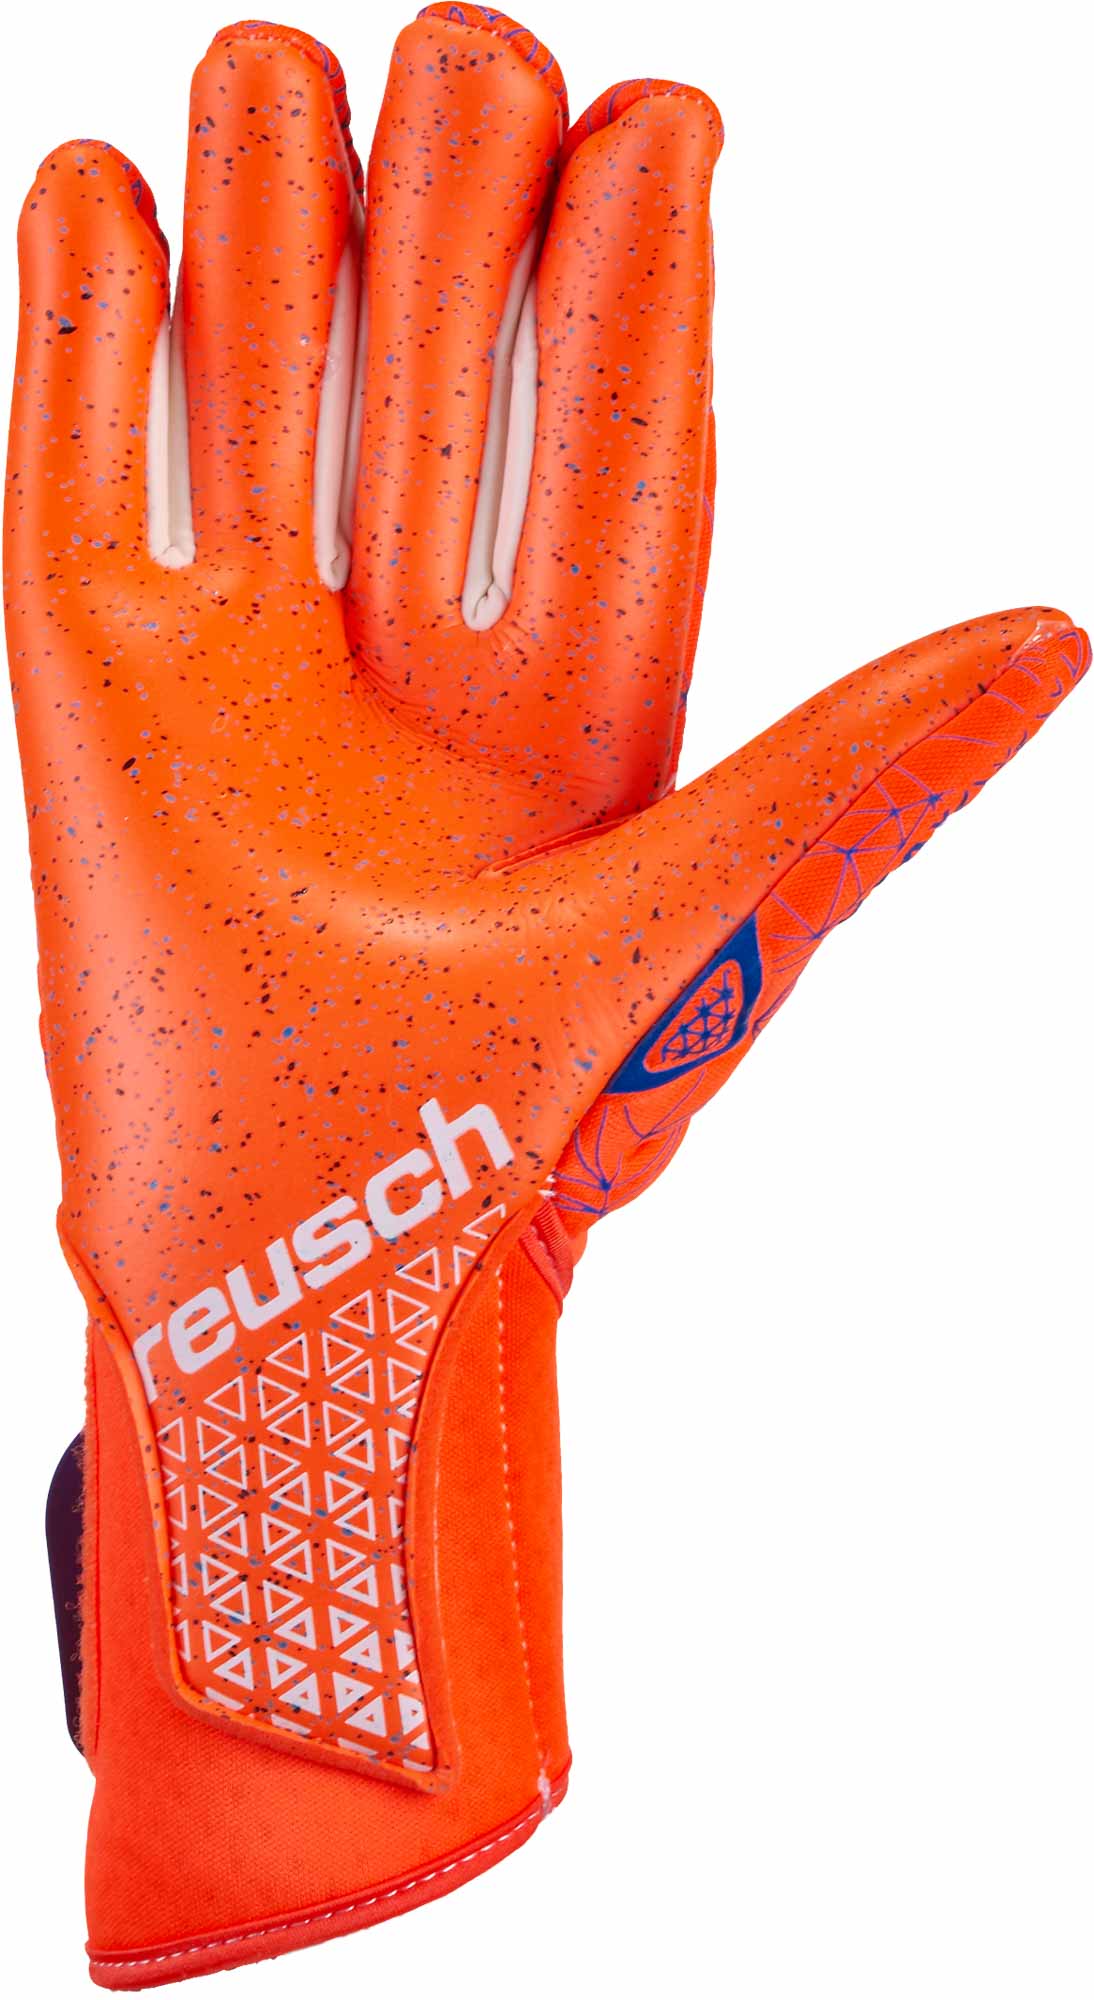 Details about   Reusch Gloves Goalkeeper Indicator G3 3970904 783 Col.black/Orange Fluo July 